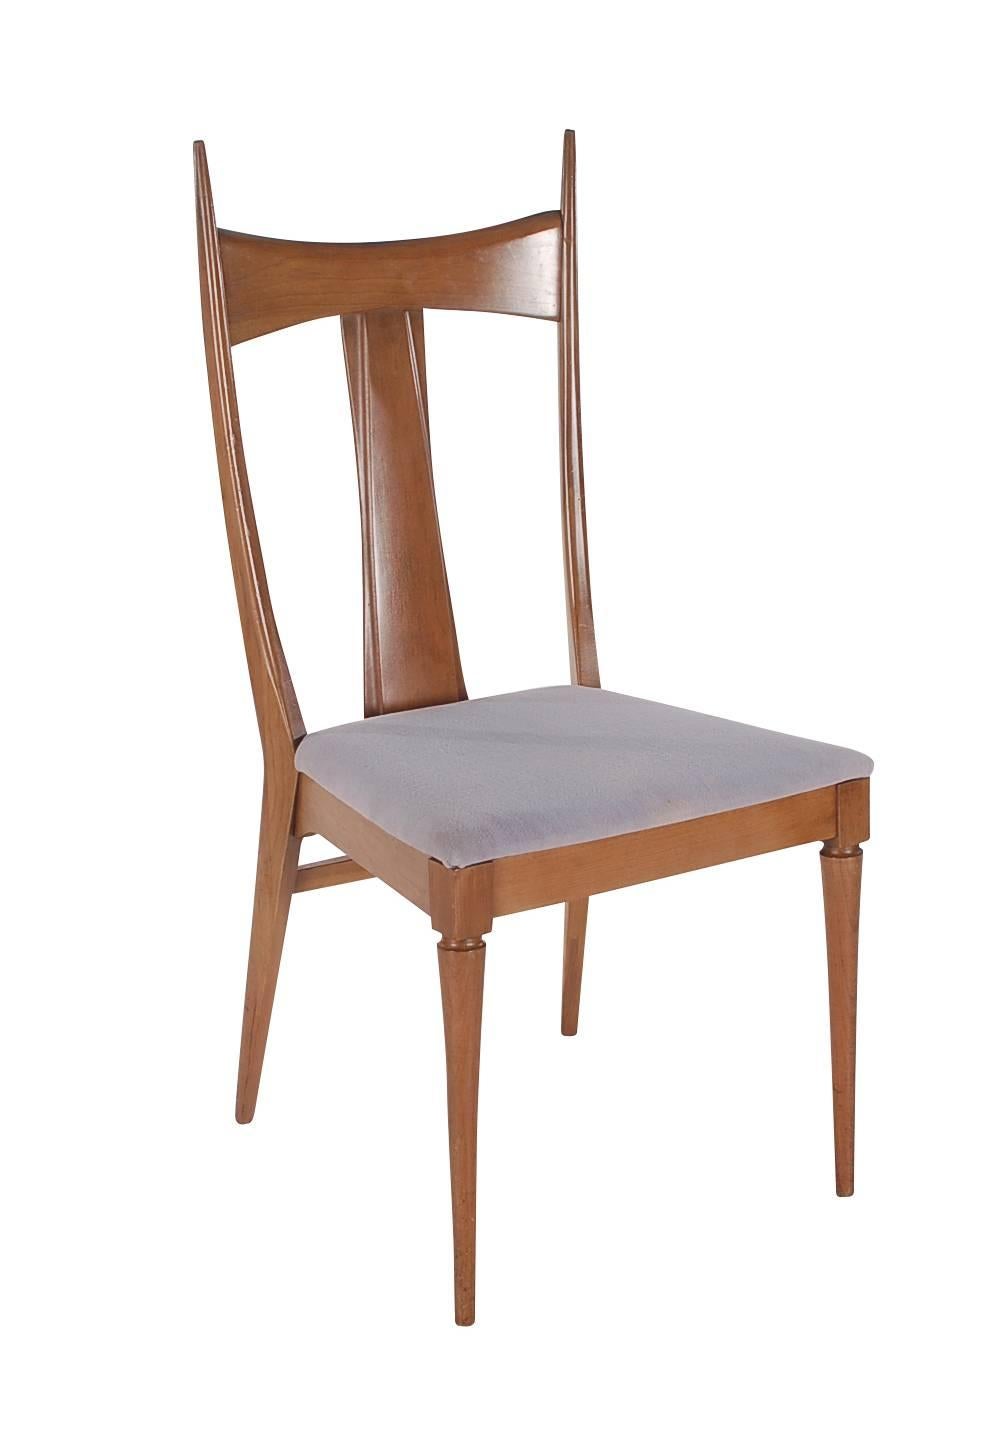 Un bel et intéressant ensemble de chaises de salle à manger fabriqué par Heywood Wakefield. Un très beau look minimaliste créé à partir de noyer massif. Les fauteuils mesurent H 40 L 23 P 19.

Dans le style de : Paul McCobb, Ico Parisi, Gio Ponti.